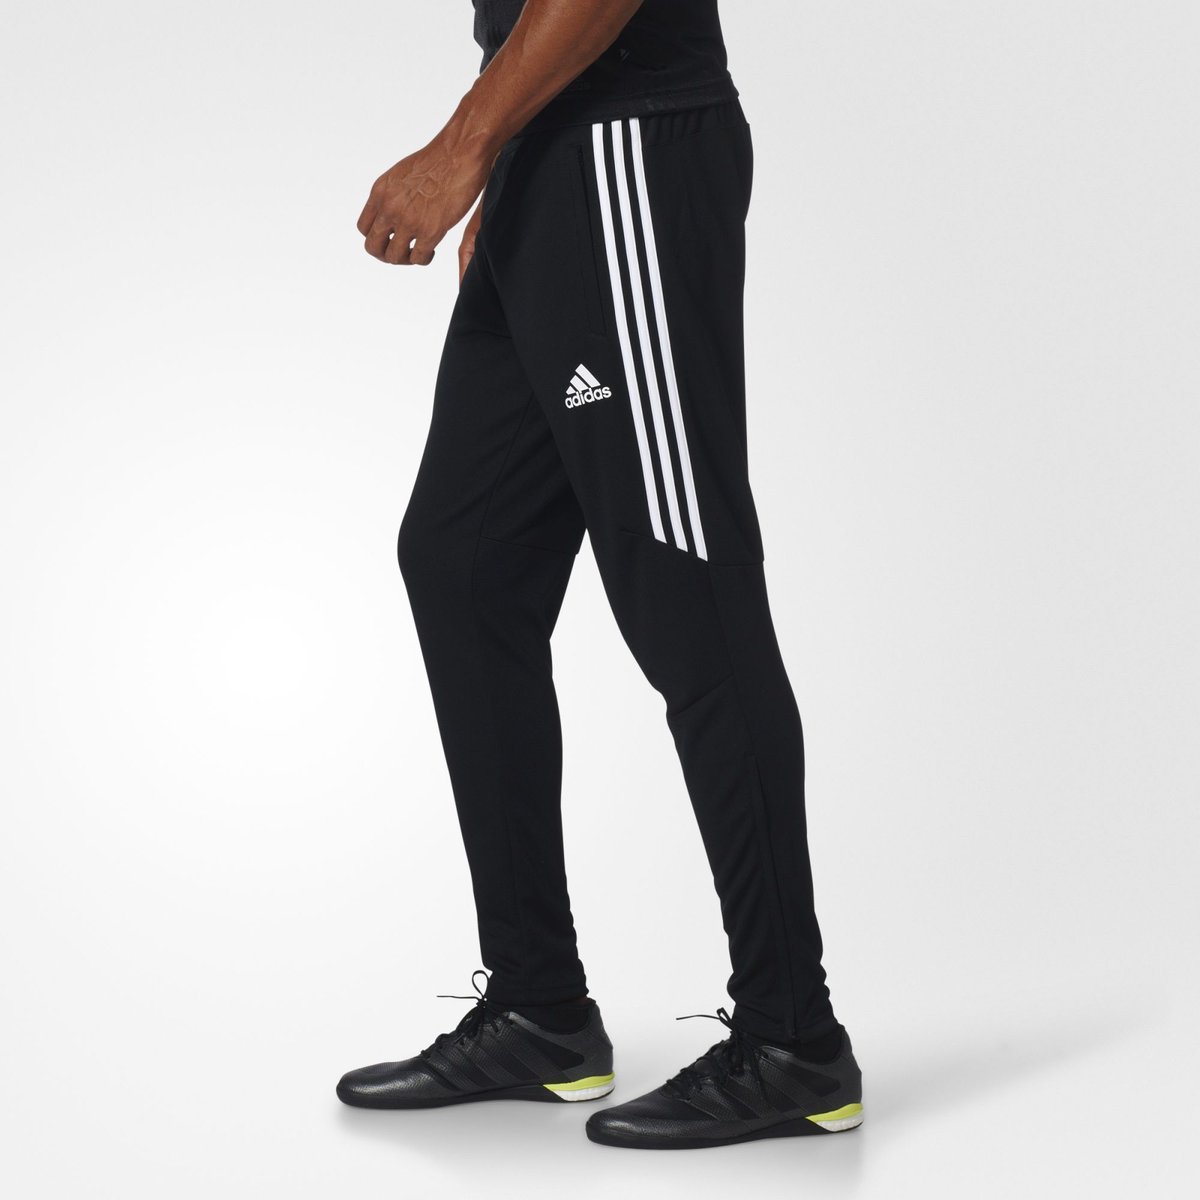 adidas Tiro 17 Training Pants. Retail 